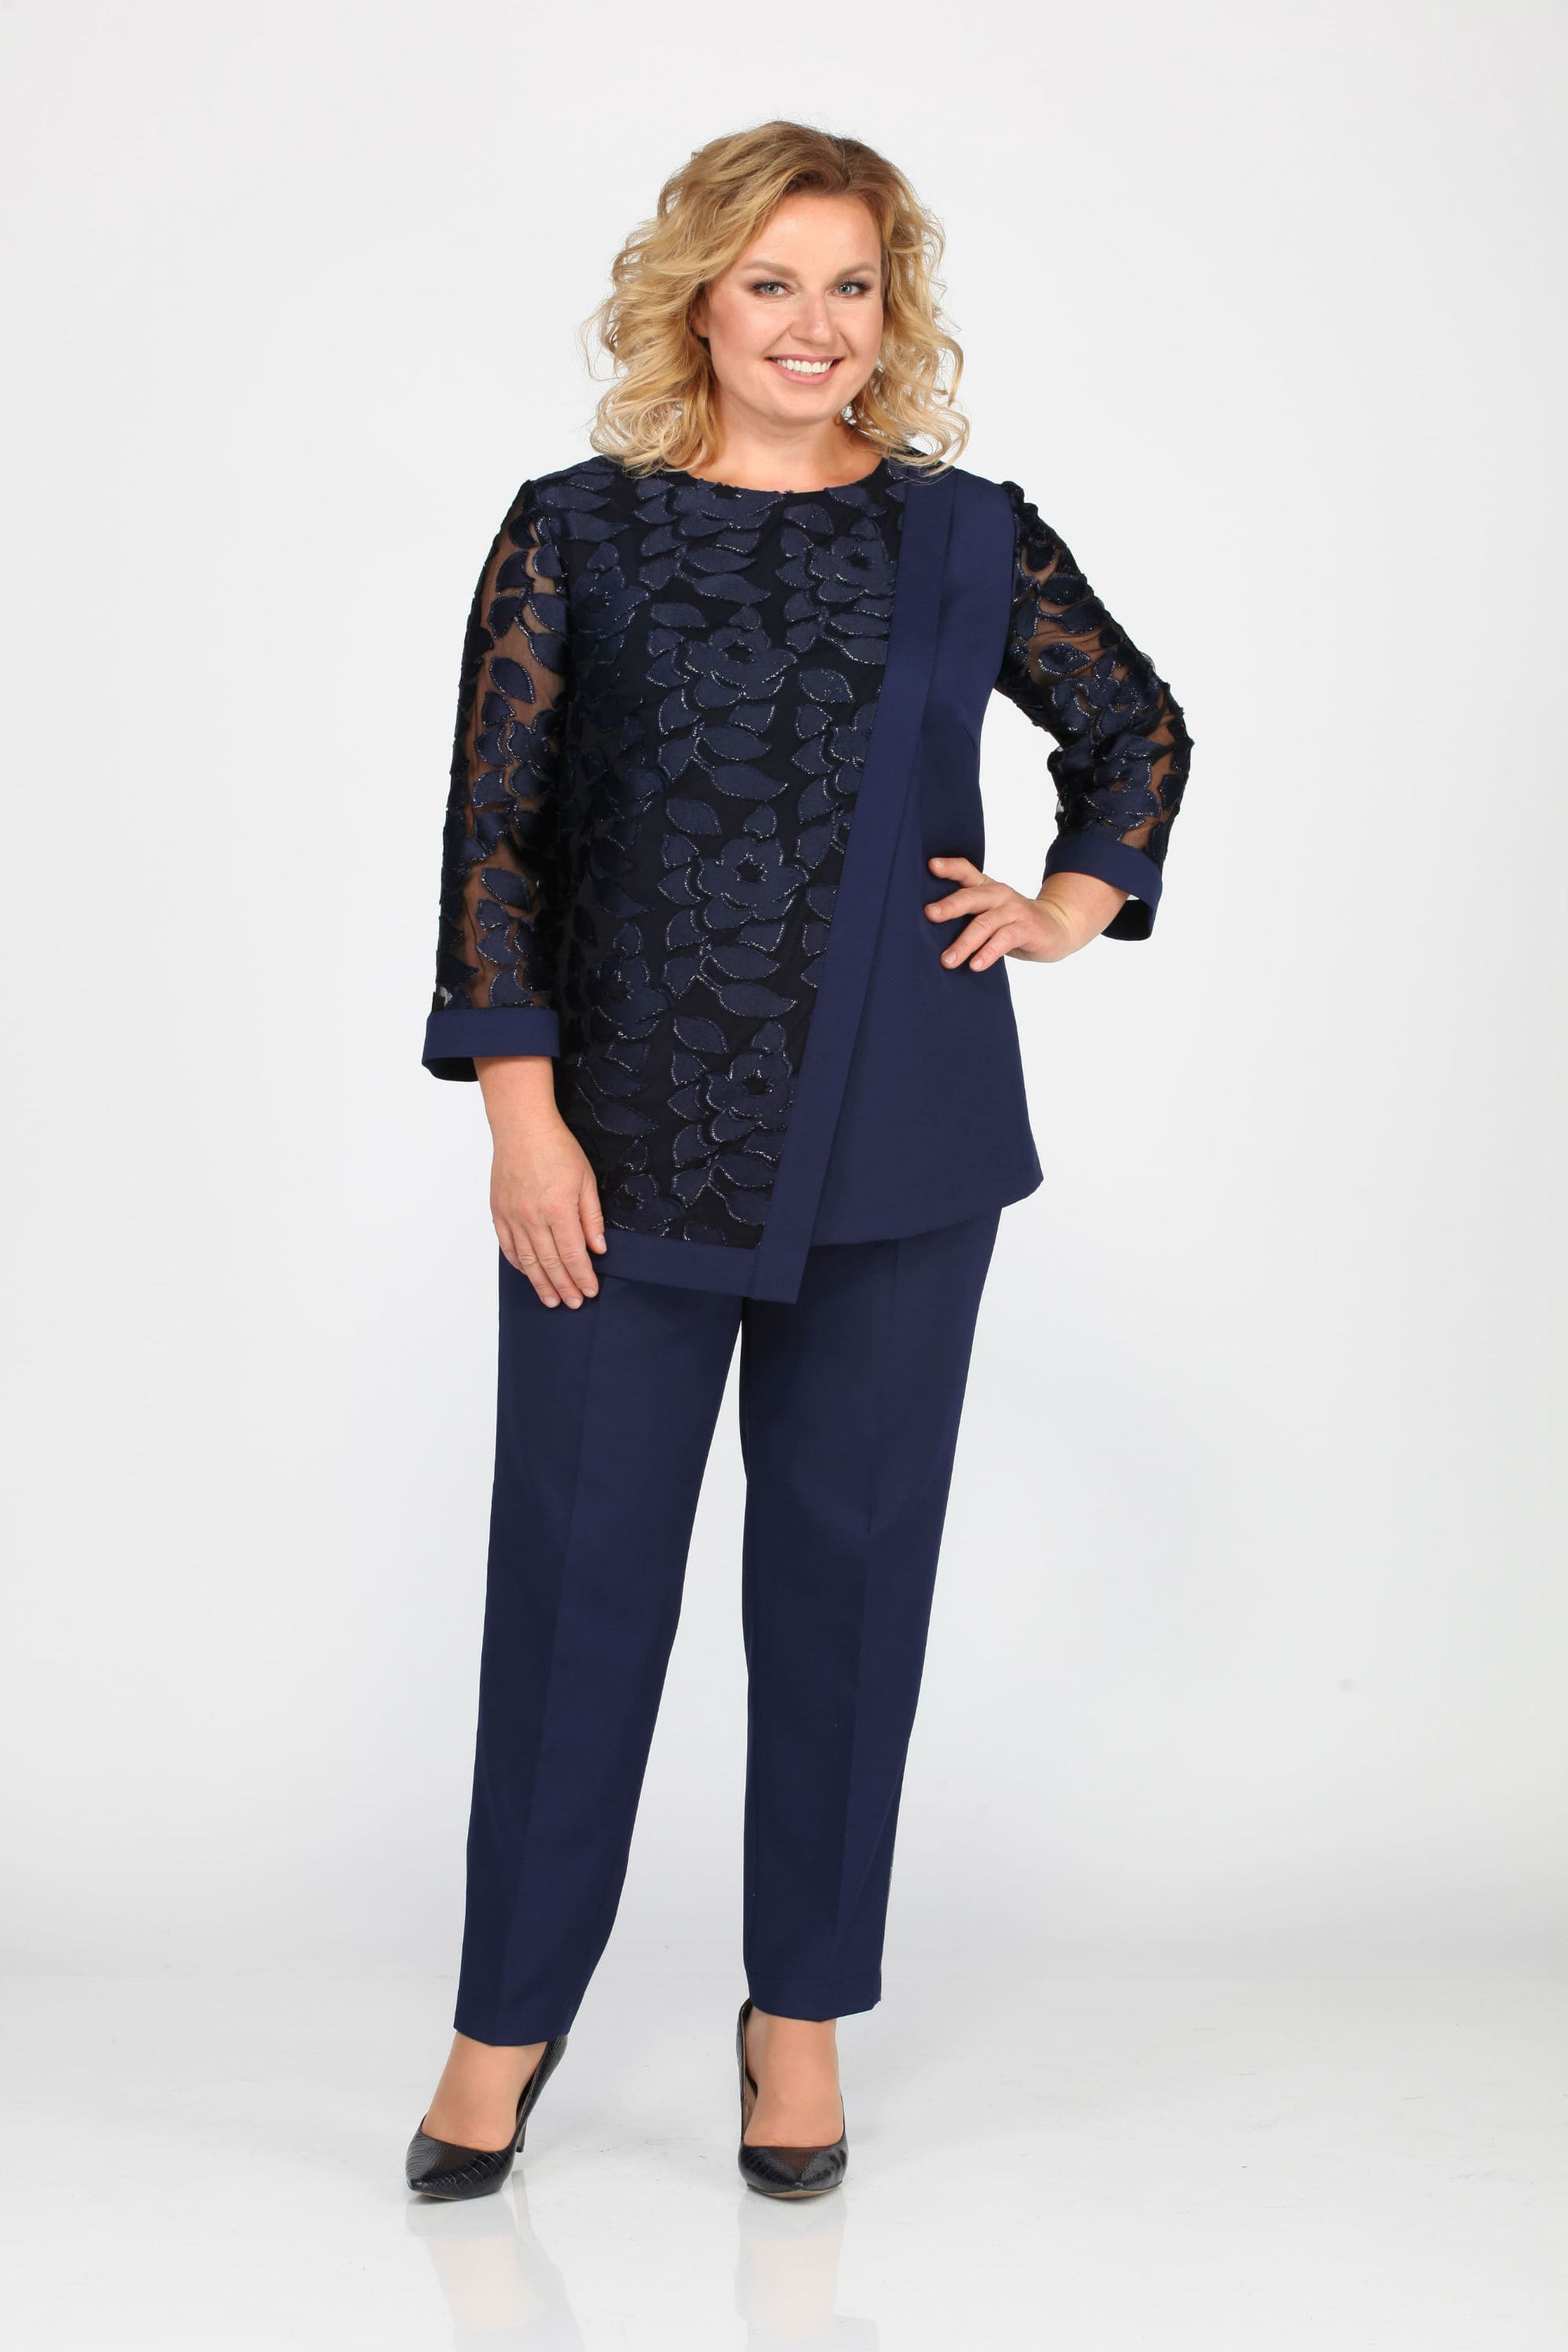 Комплект из прямых брюк и блузона с кружевным декором, темно-синий